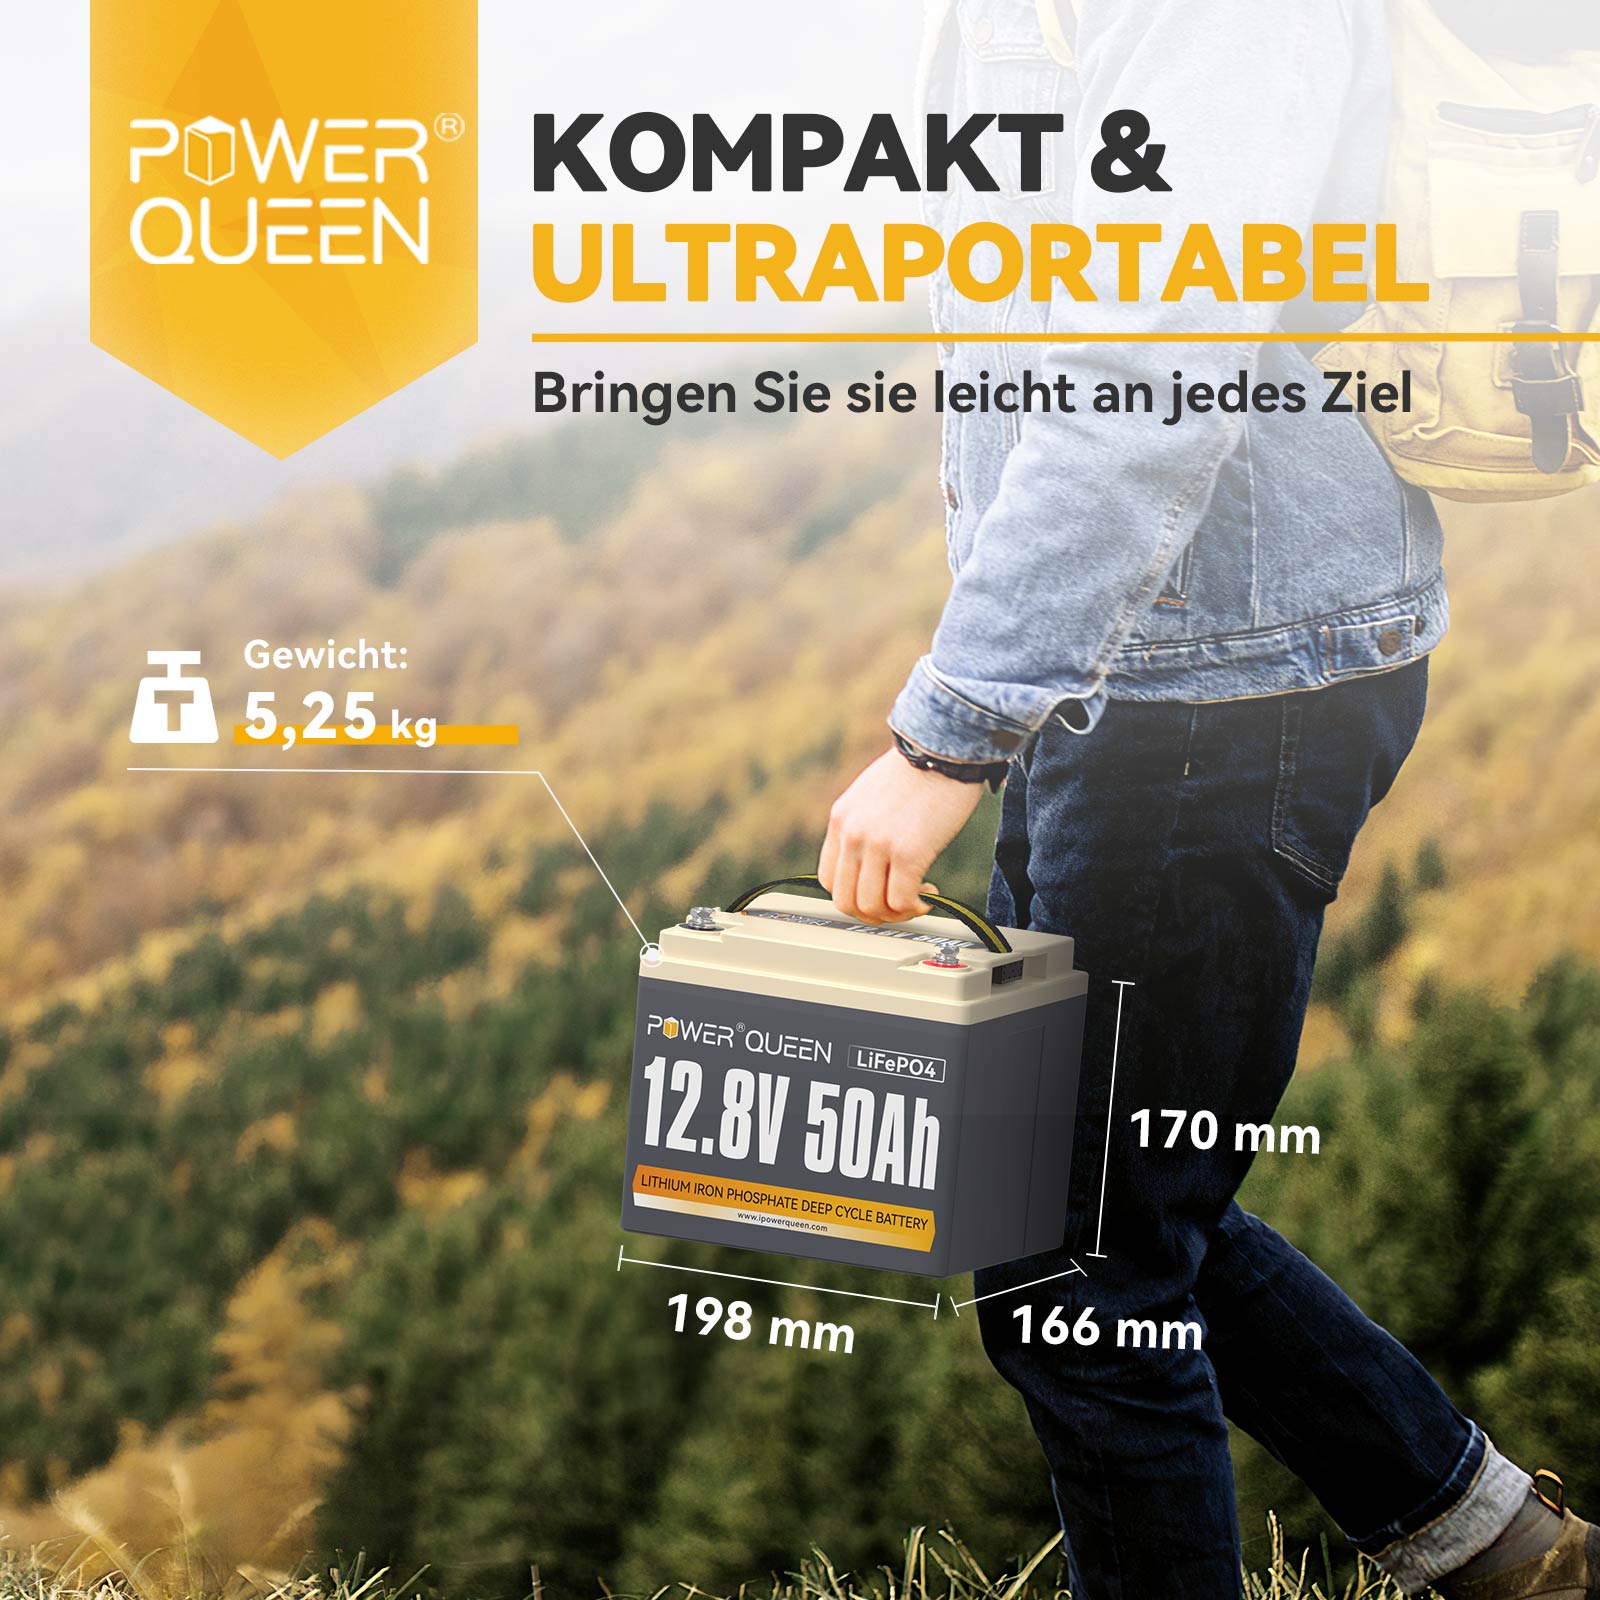 【0% VAT】Power Queen 12.8V 50Ah LiFePO4 battery, Built-in 50A BMS